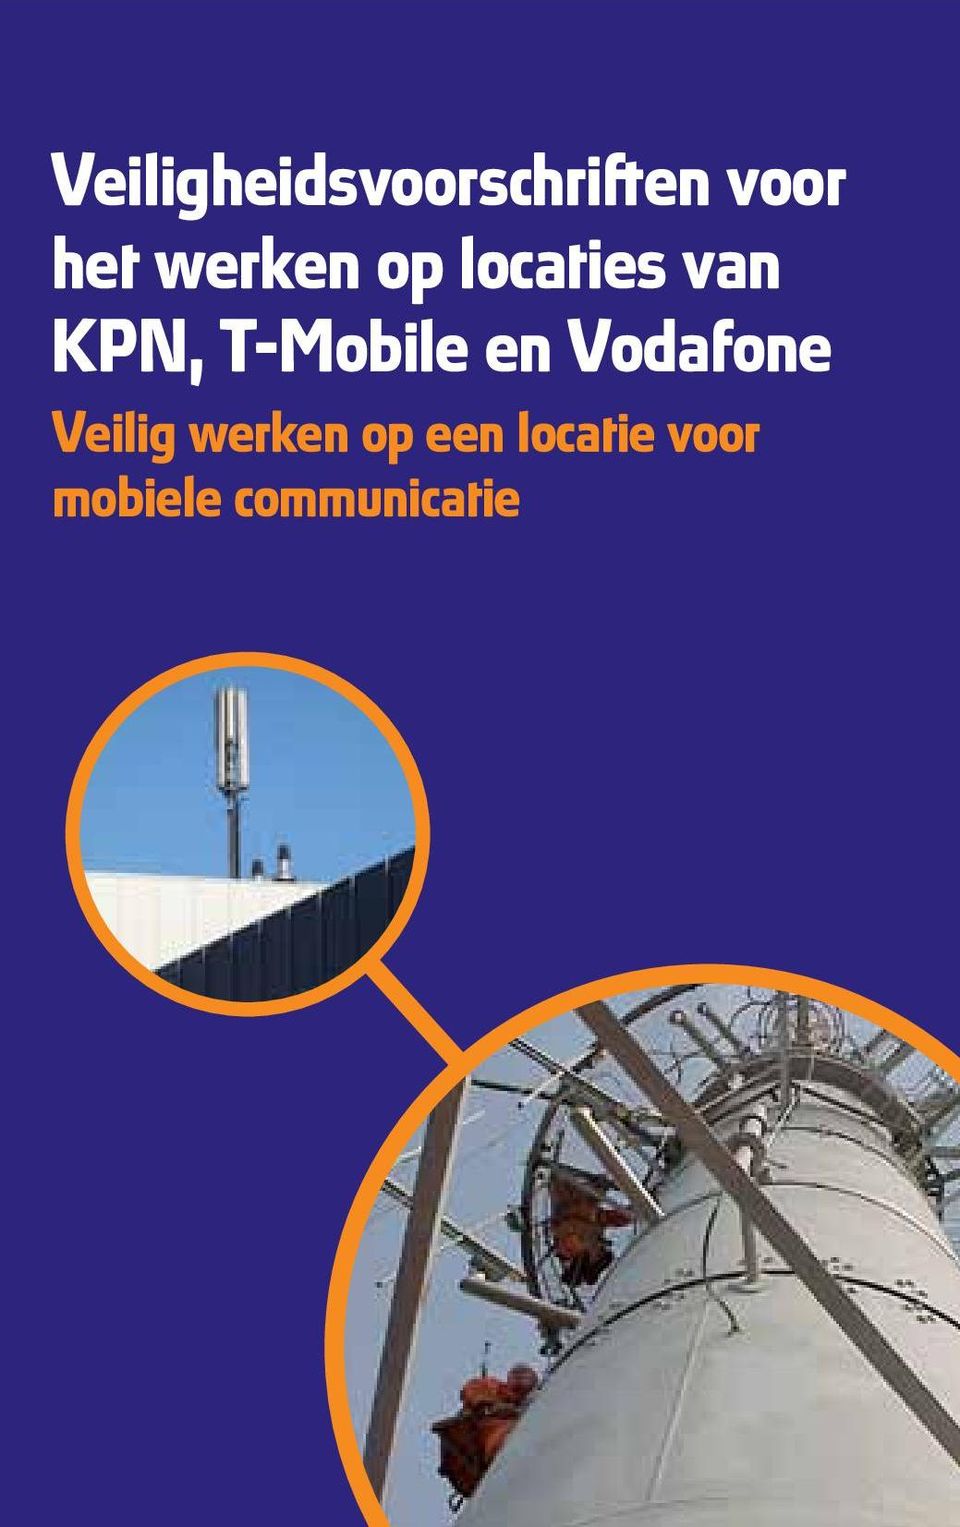 T-Mobile en Vodafone Veilig werken